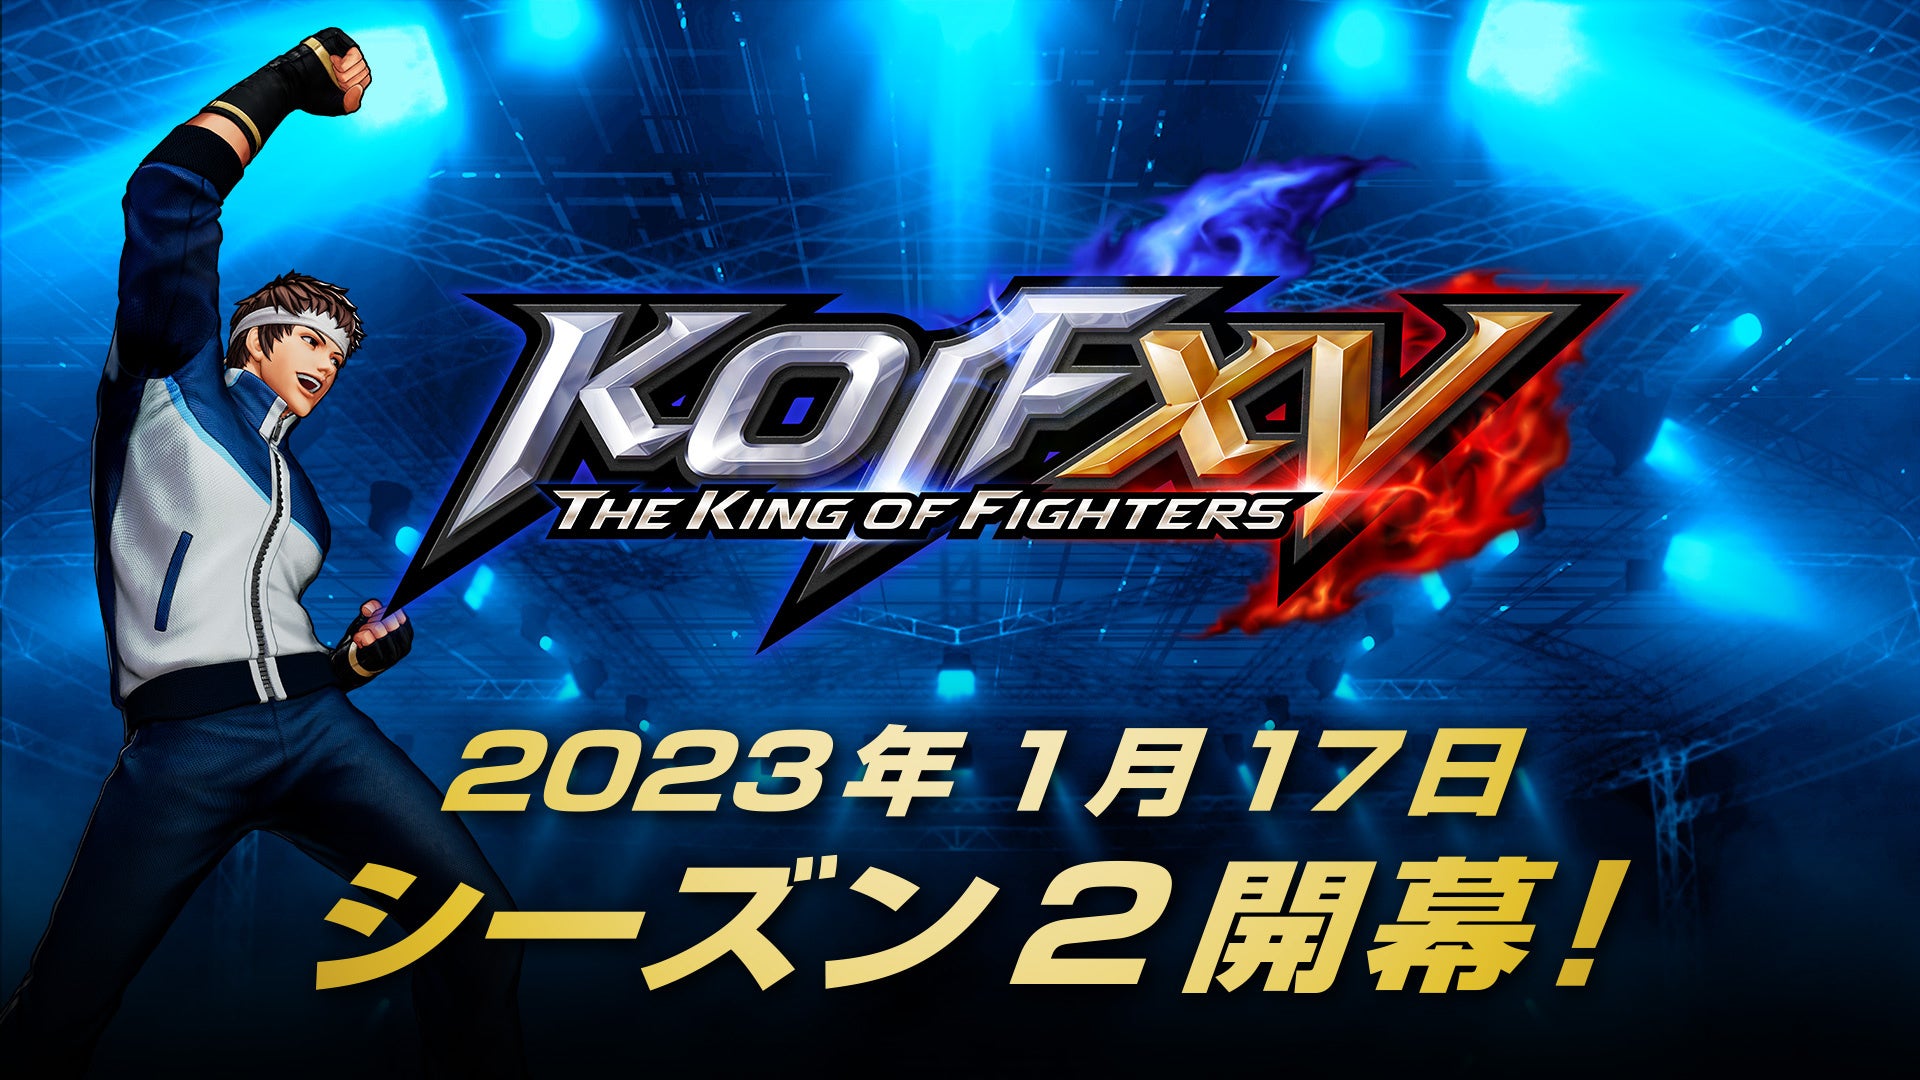 対戦格闘ゲーム『THE KING OF FIGHTERS XV』、2023年1月17日よりシーズン2が開幕！シーズン2 DLCキャラクター第1弾「矢吹真吾」の配信とゲームバランス調整を実施。